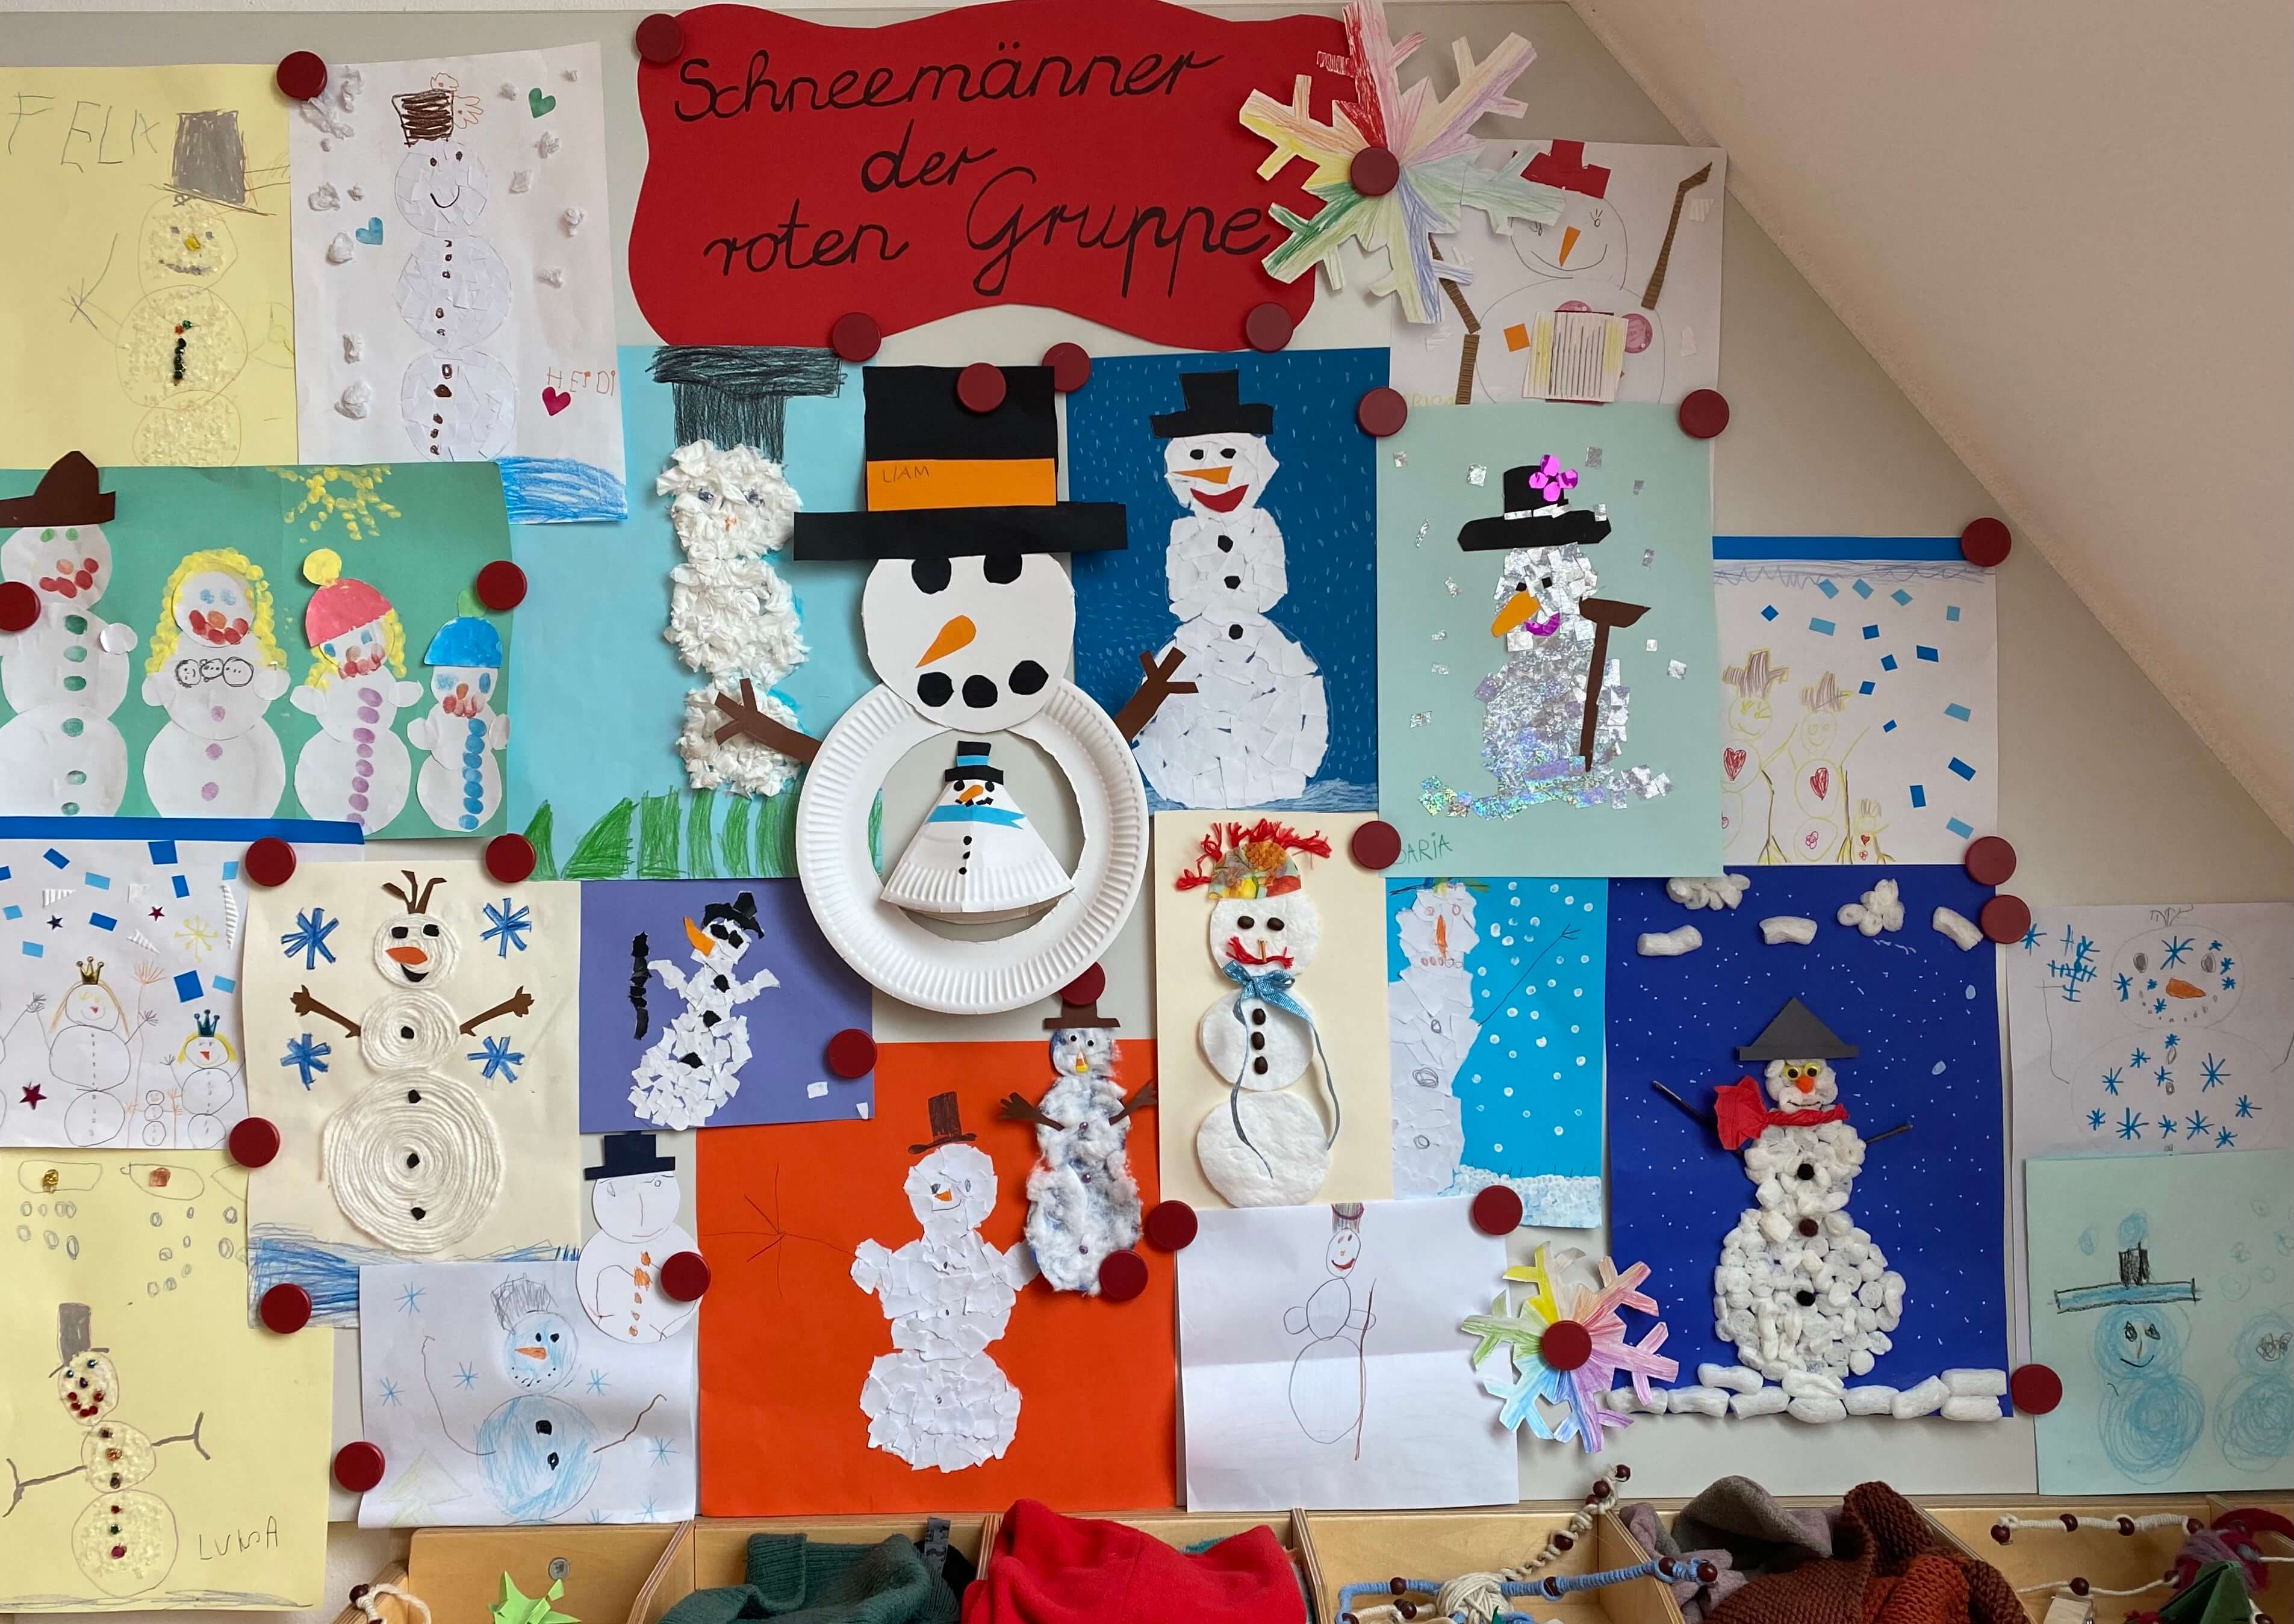 selbst gebastelte Schneemann-Bilder der Kinder im Kindergarten Seligenthal